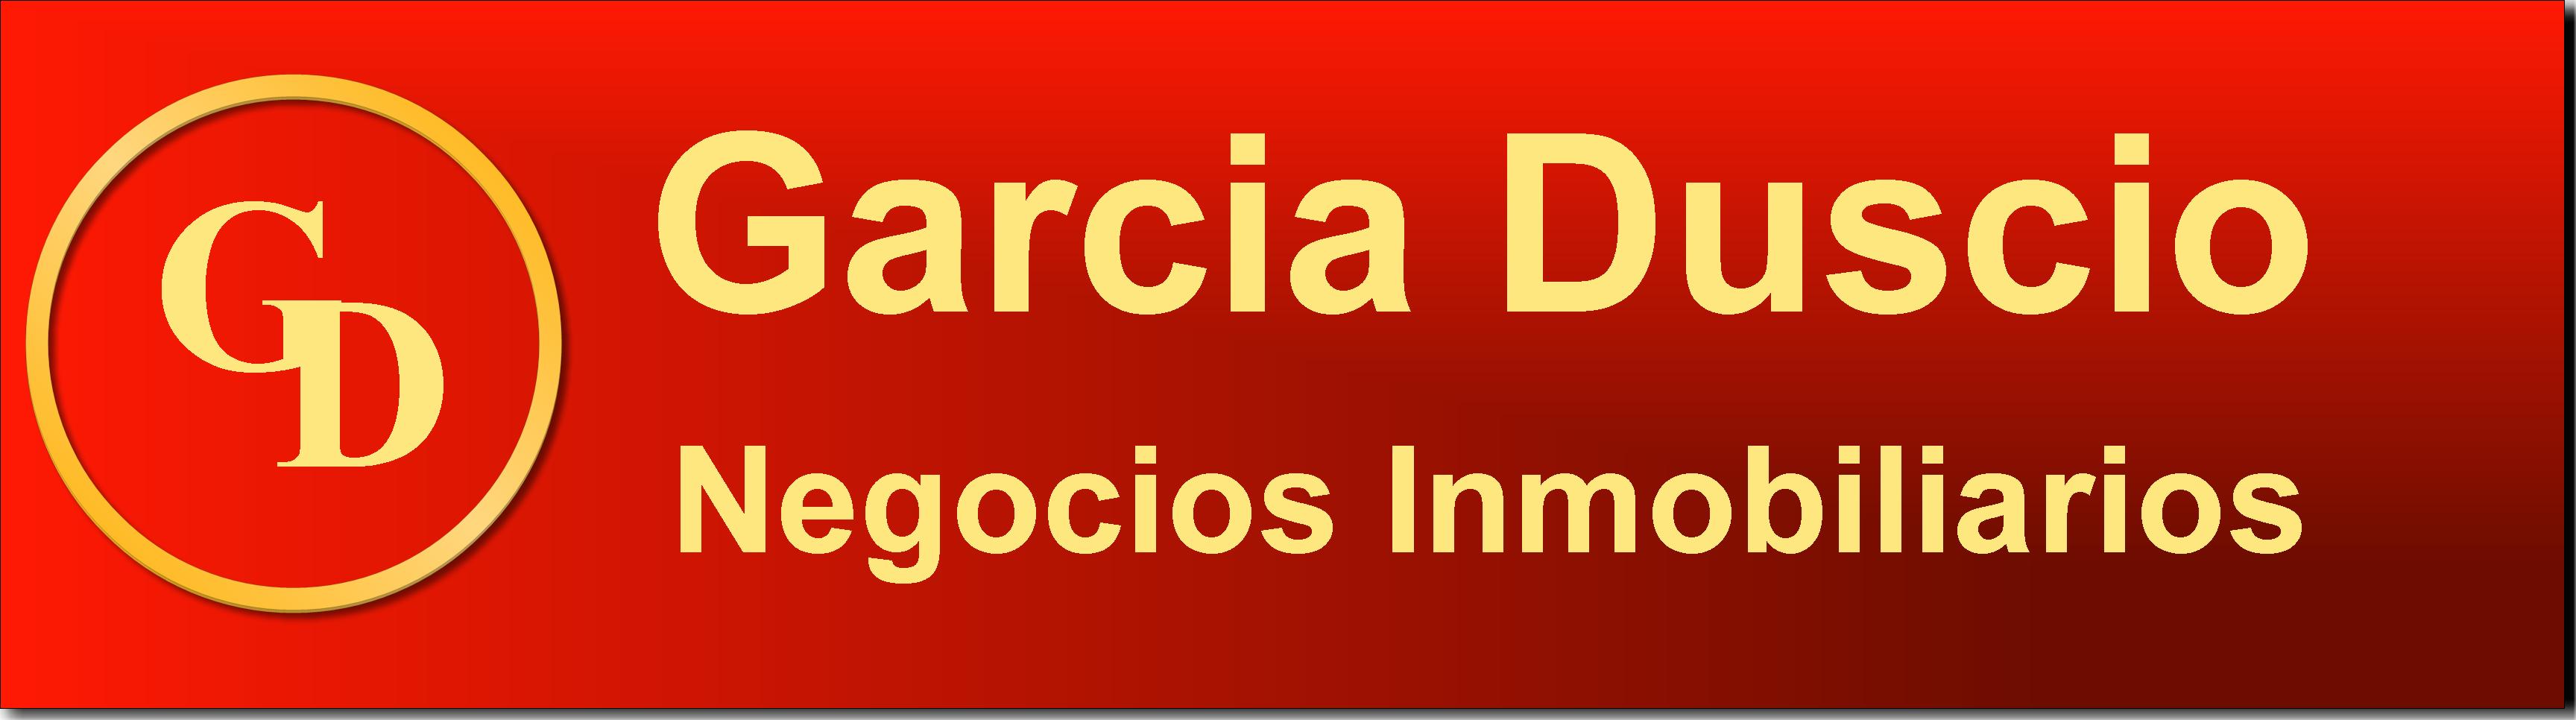 Garcia Duscio Negocos Inmobiliarios